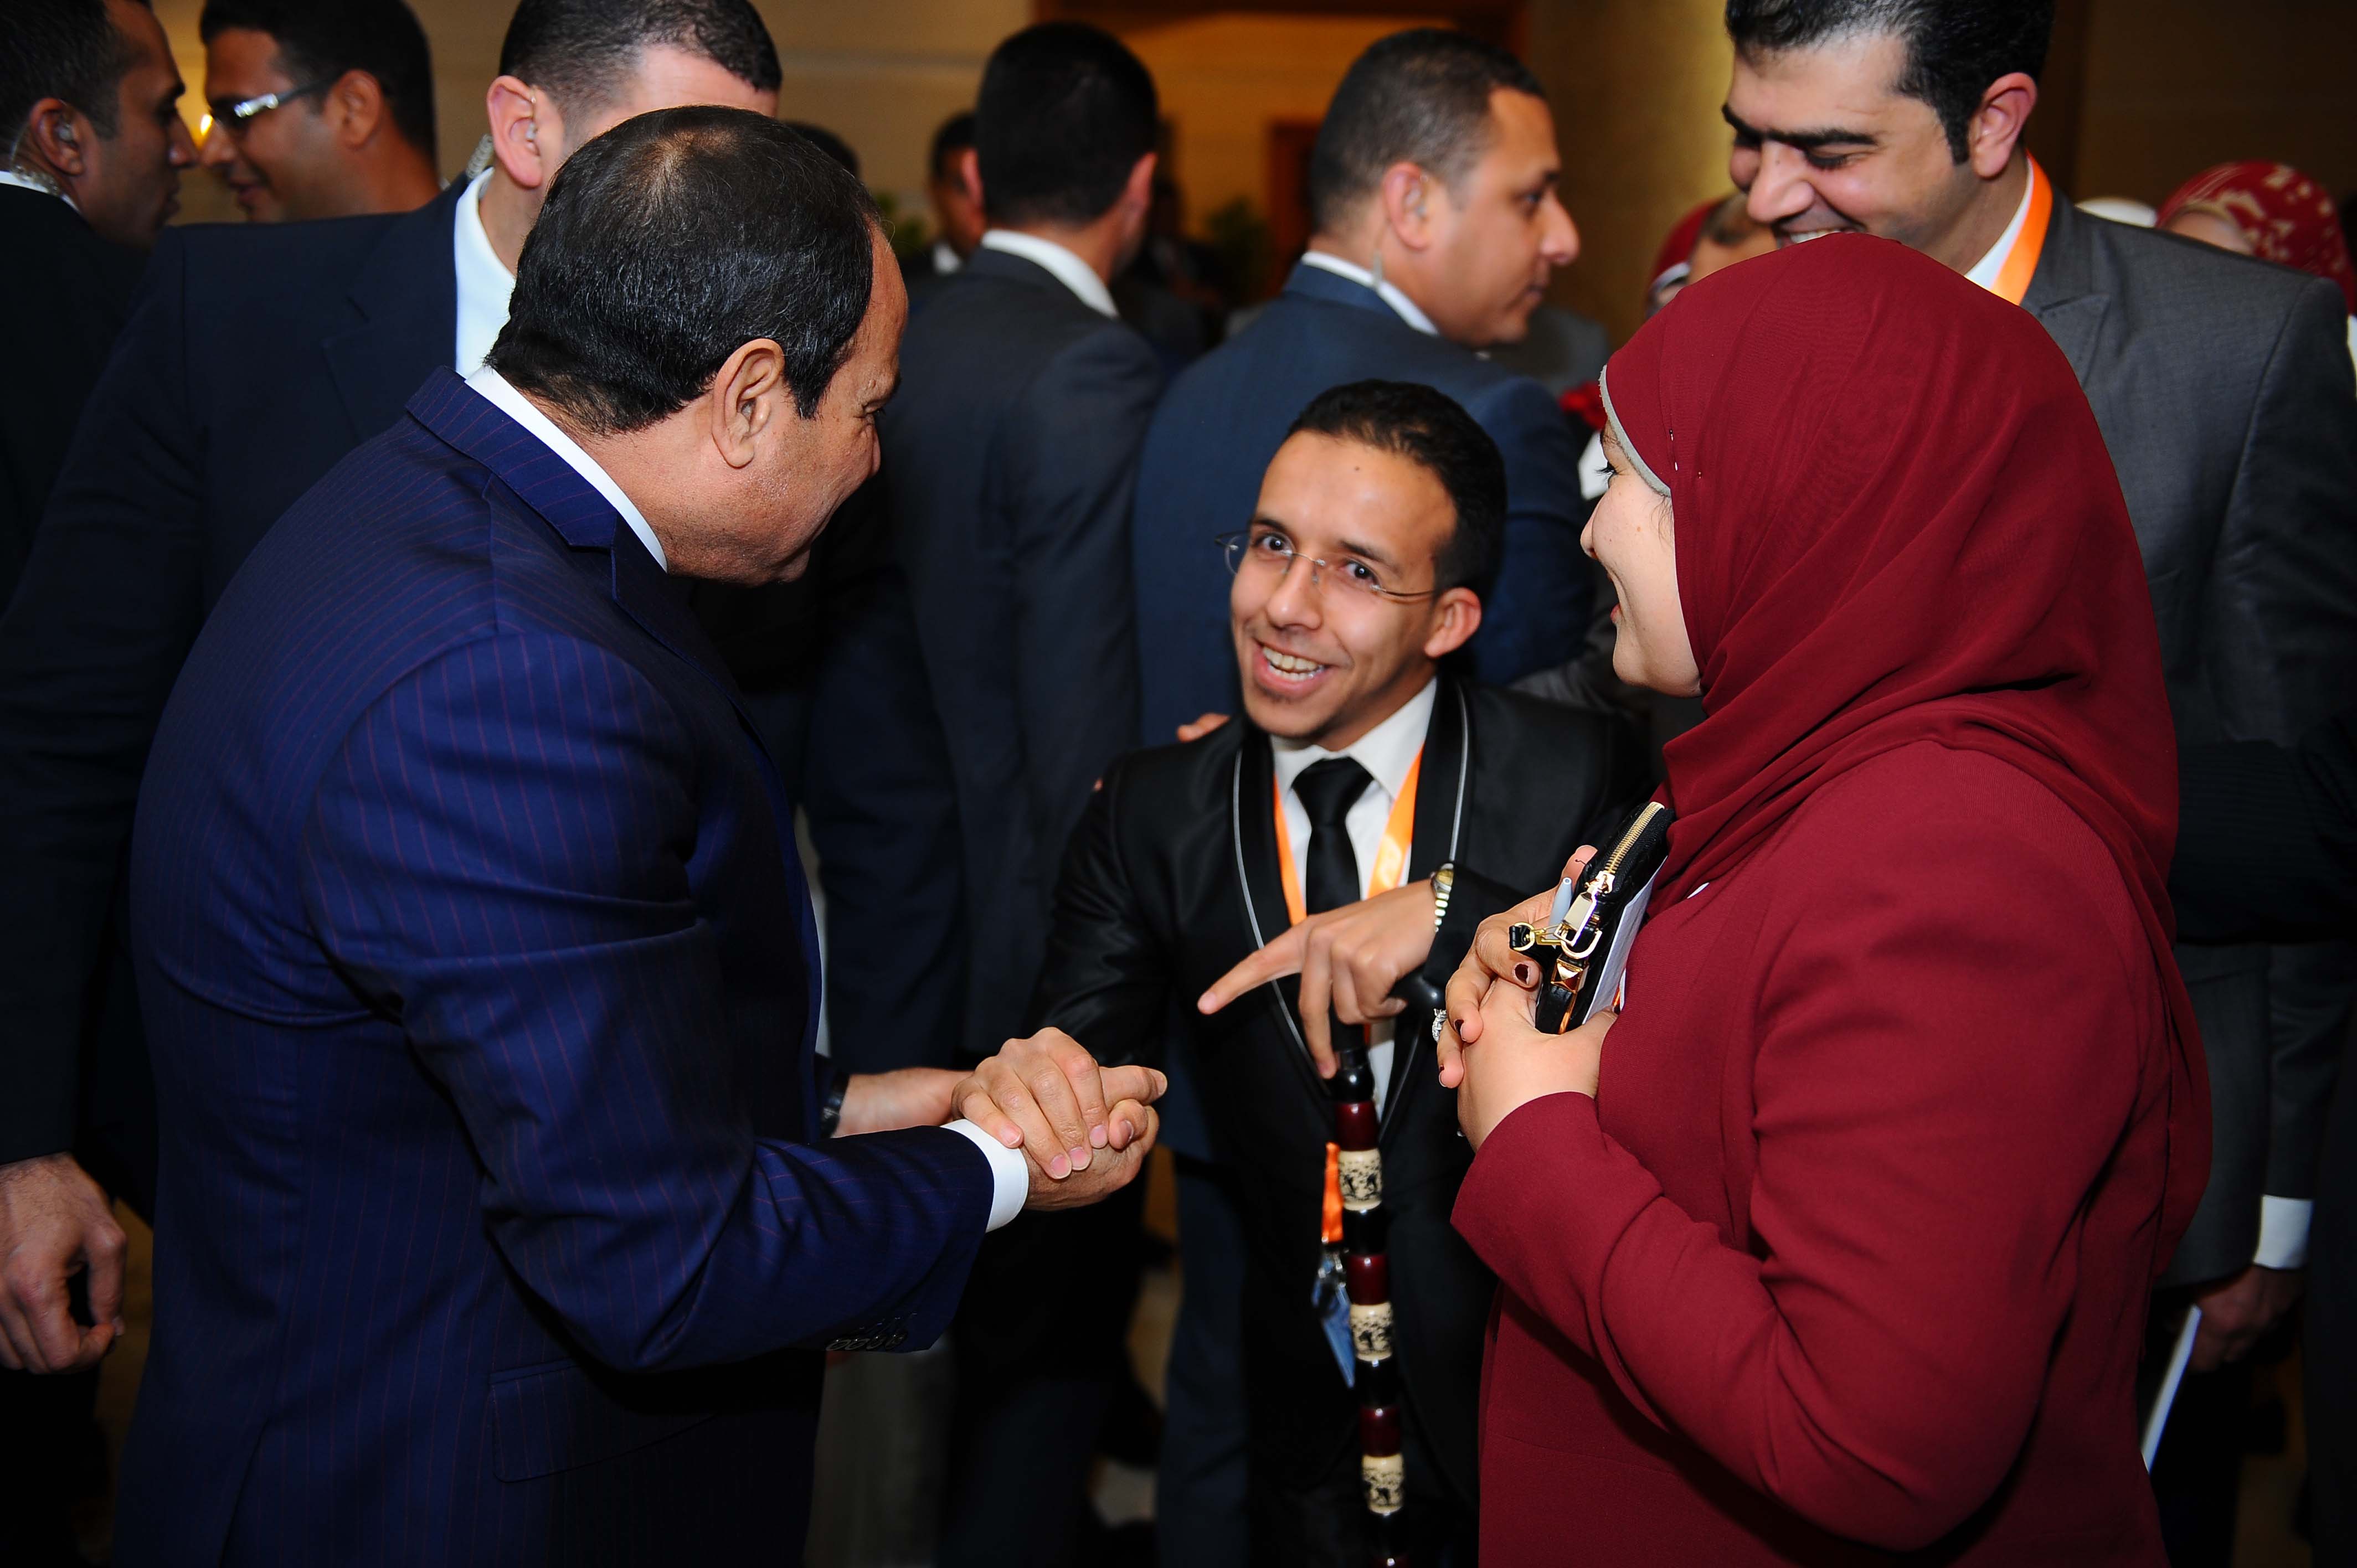 الرئيس السيسى يصافح أحد شباب المؤتمر